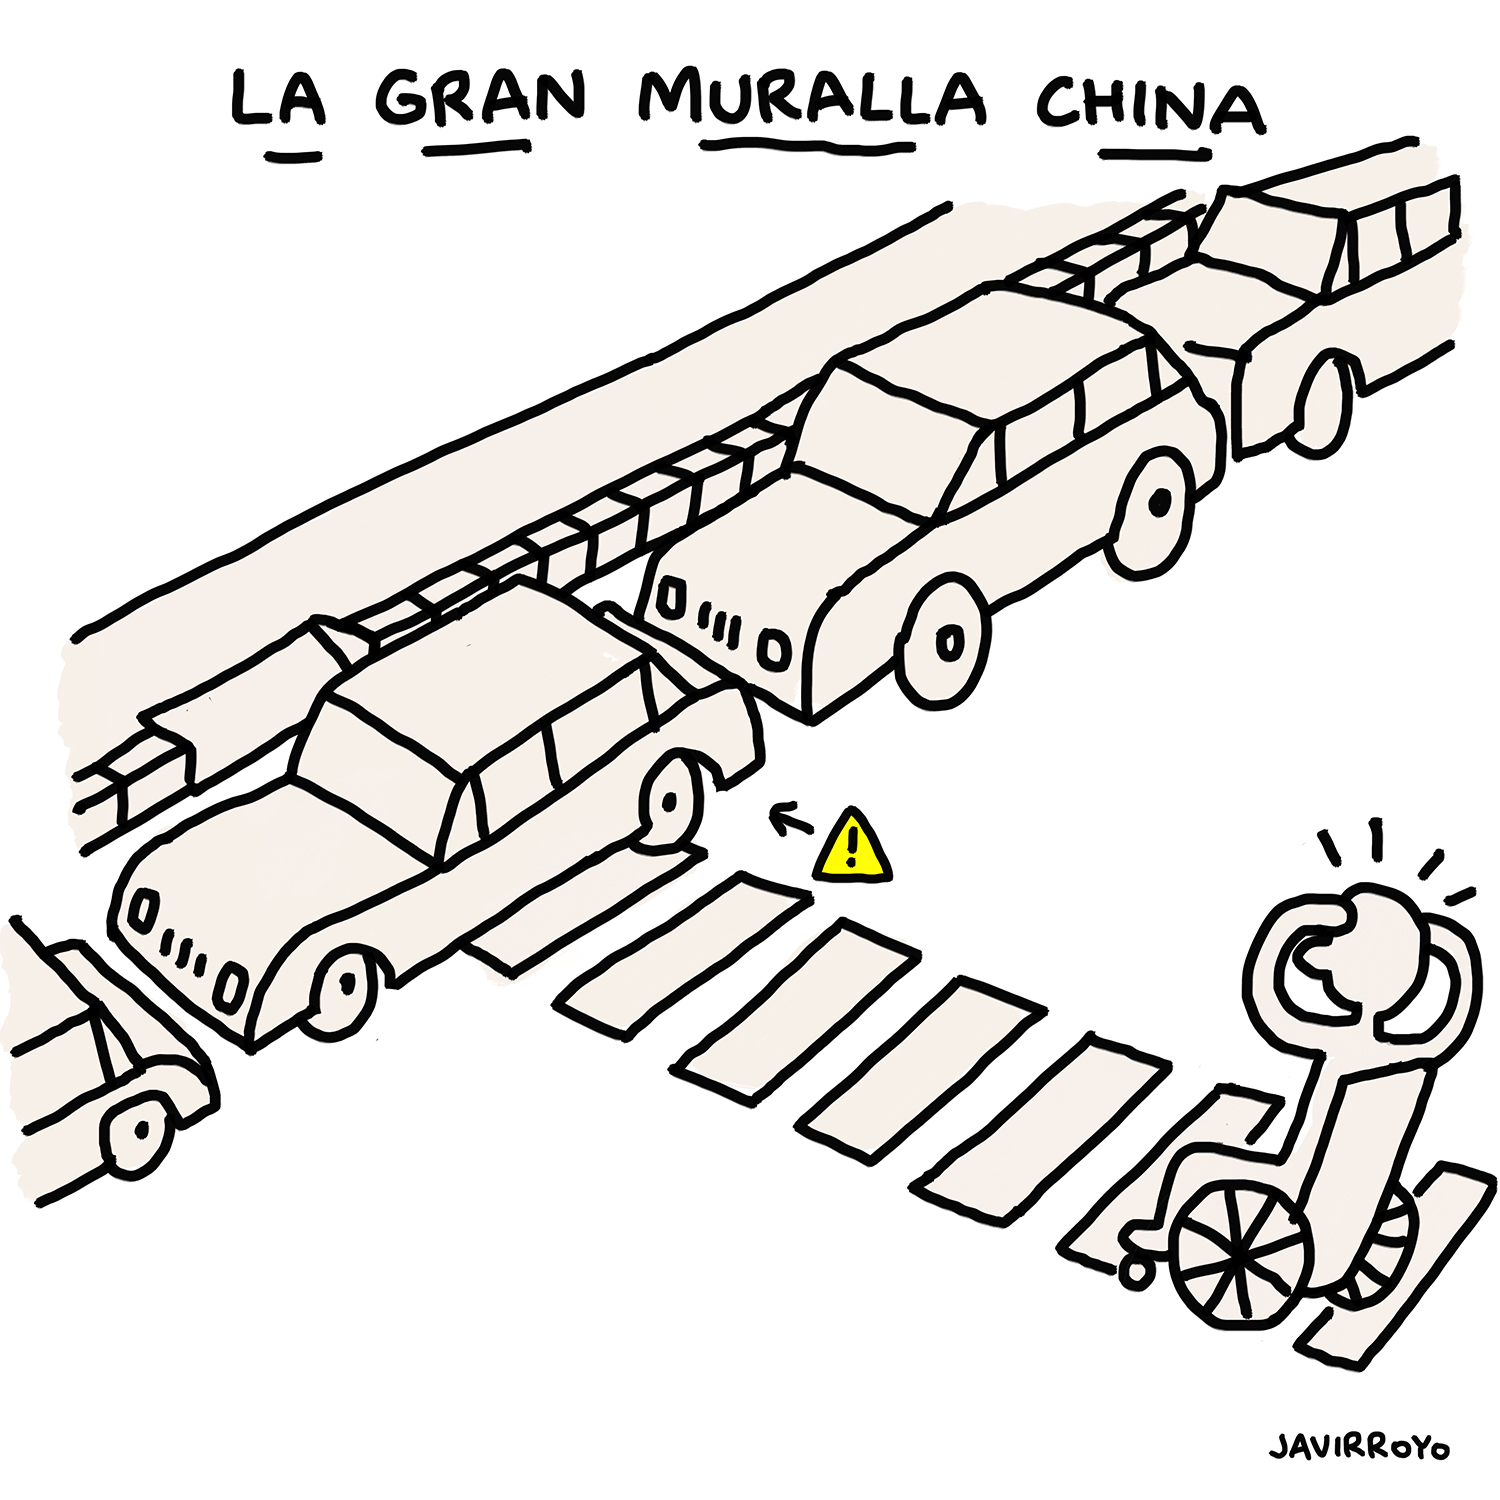 Viñeta de Javier Royo titulada 'La gran Muralla China' en la que una persona en silla de ruedas intenta cruzar un paso de peatones con un coche mal aparcado que le impide el paso.